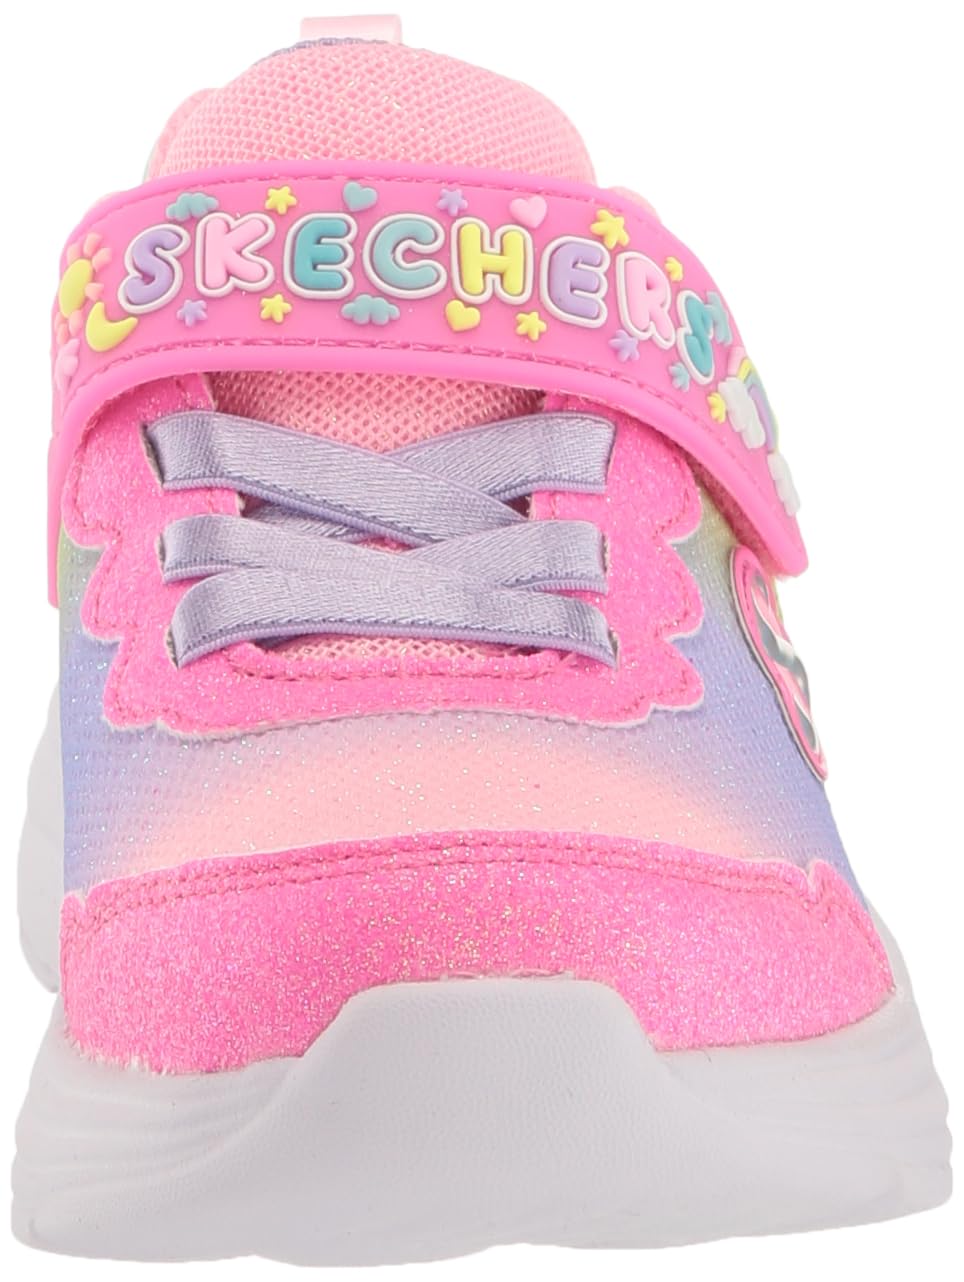 Skechers Unisex-Child My Dreamers Sneaker